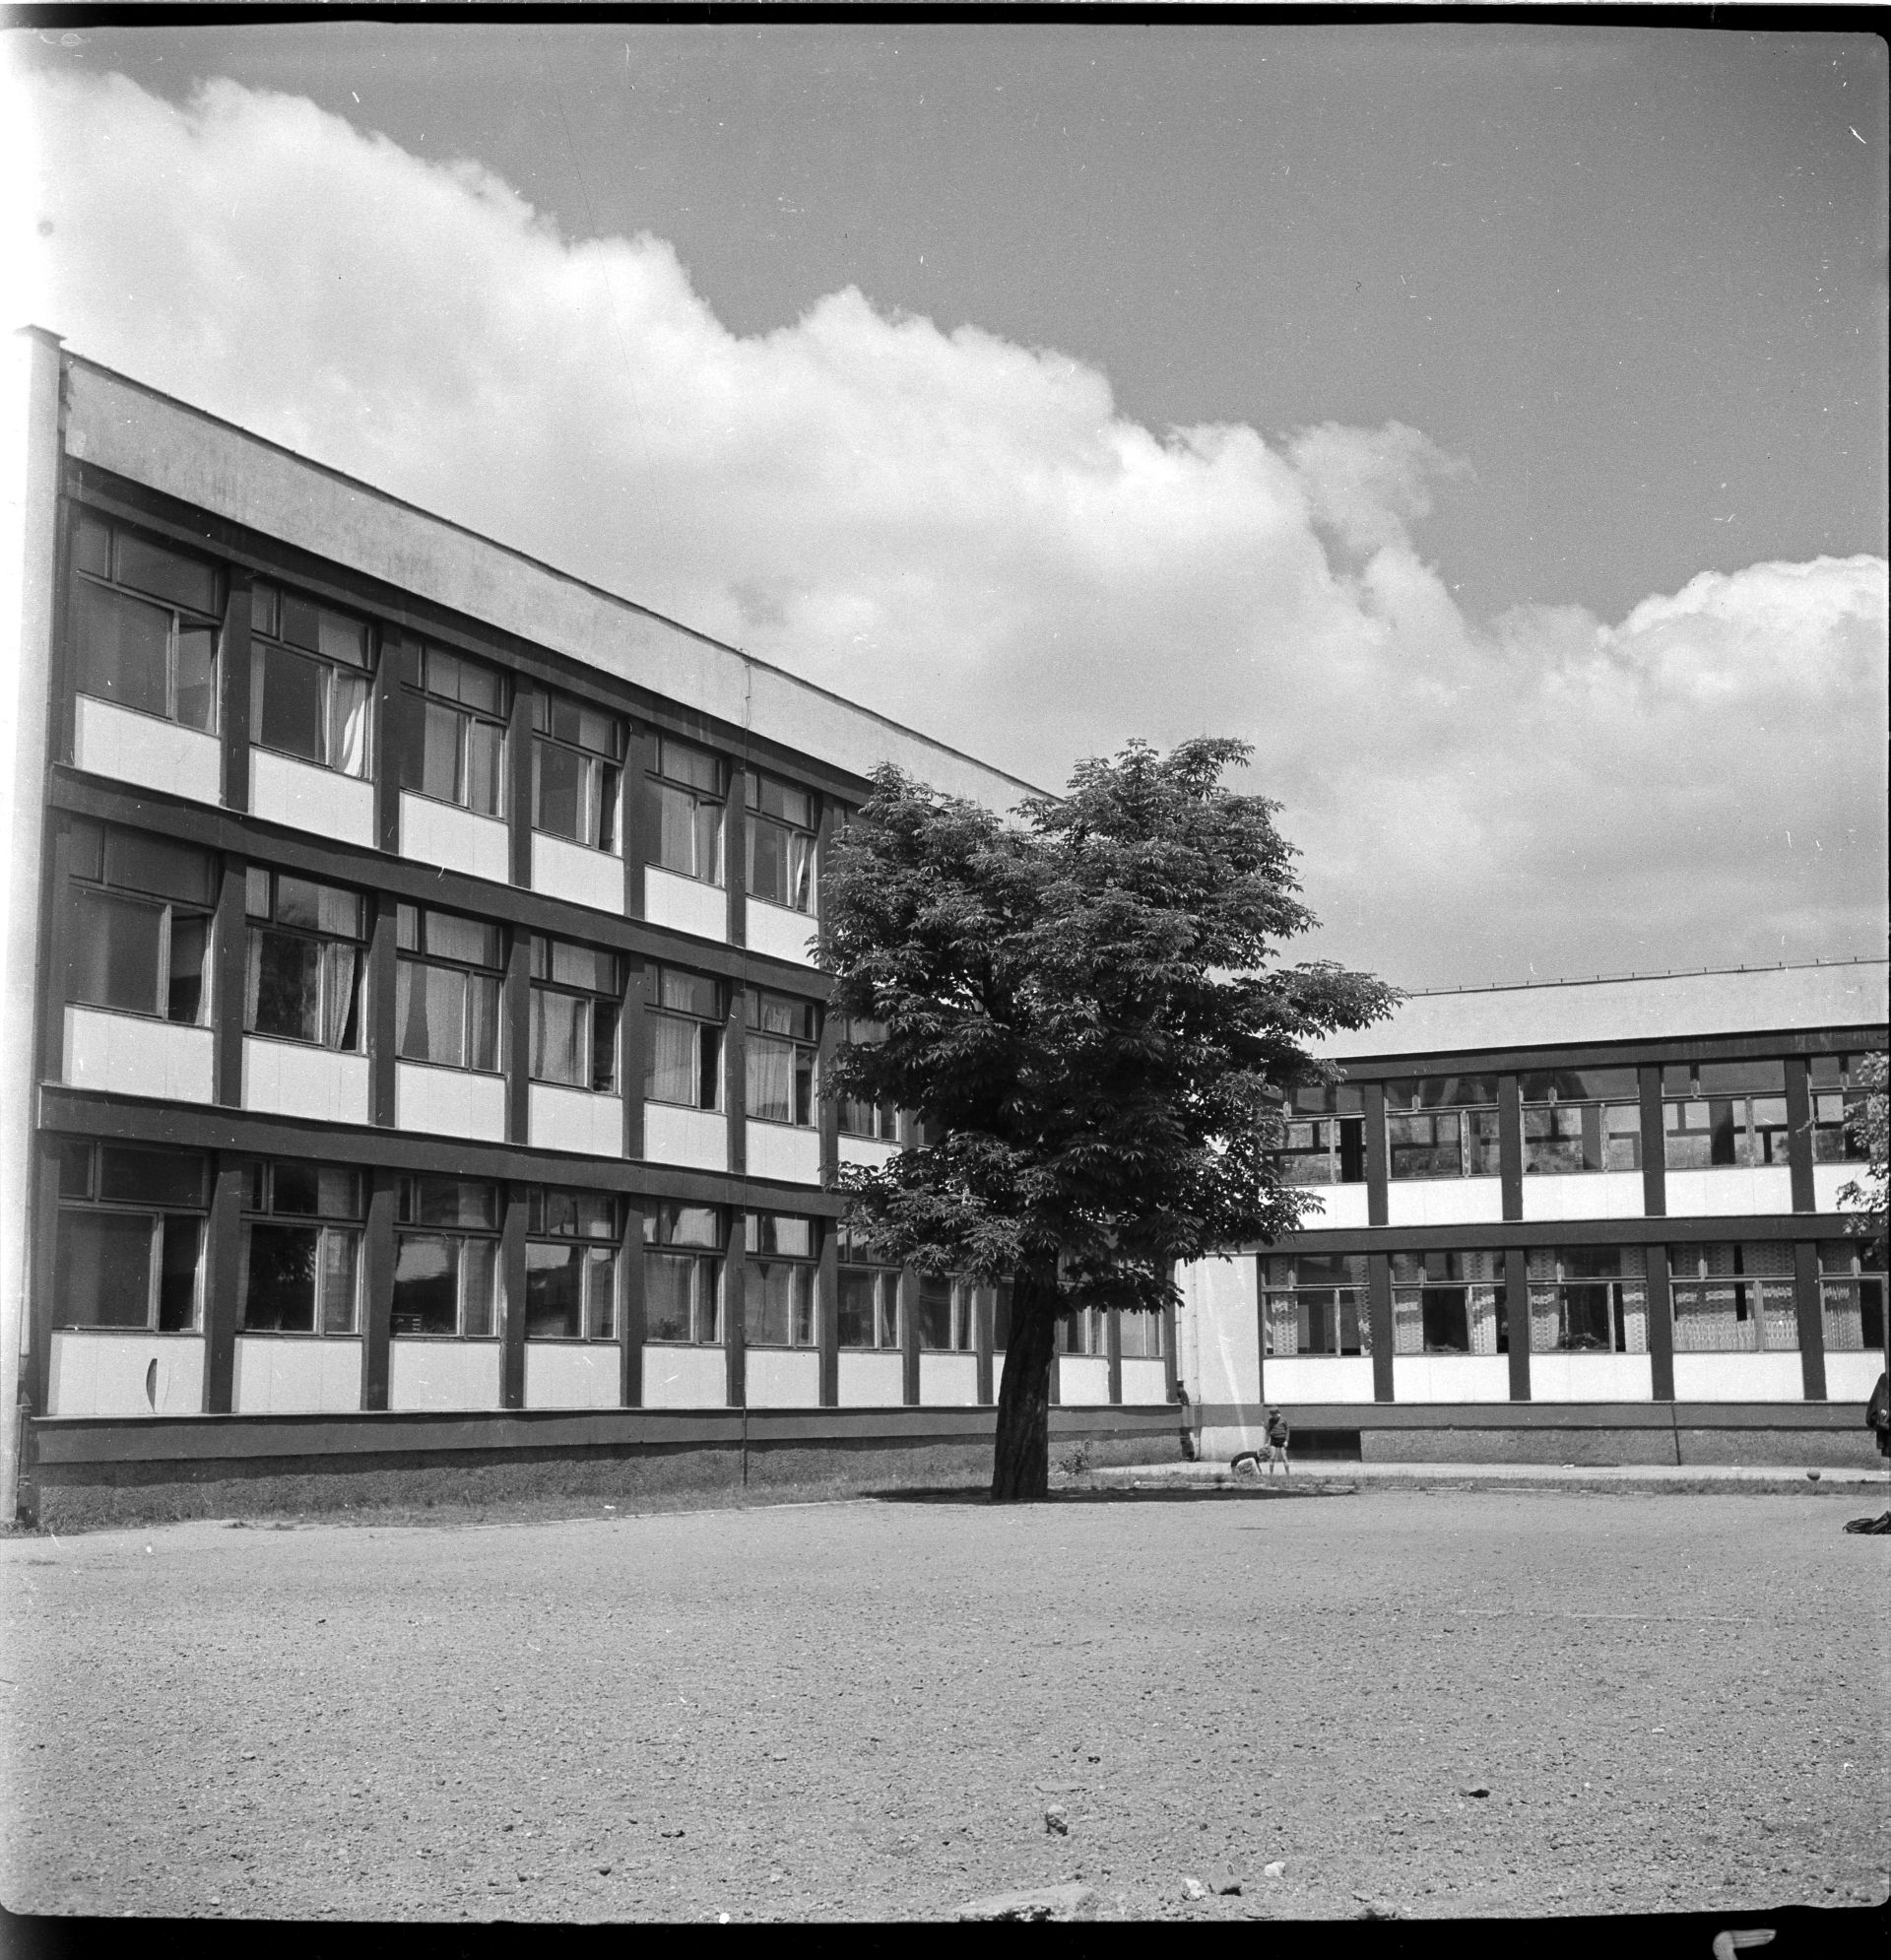 Szkoła Podstawowa nr 71 przy Podwalu, projekt 1955-56, realizacja 1958-60, fot. Tomasz Olszewski, Muzeum Architektury